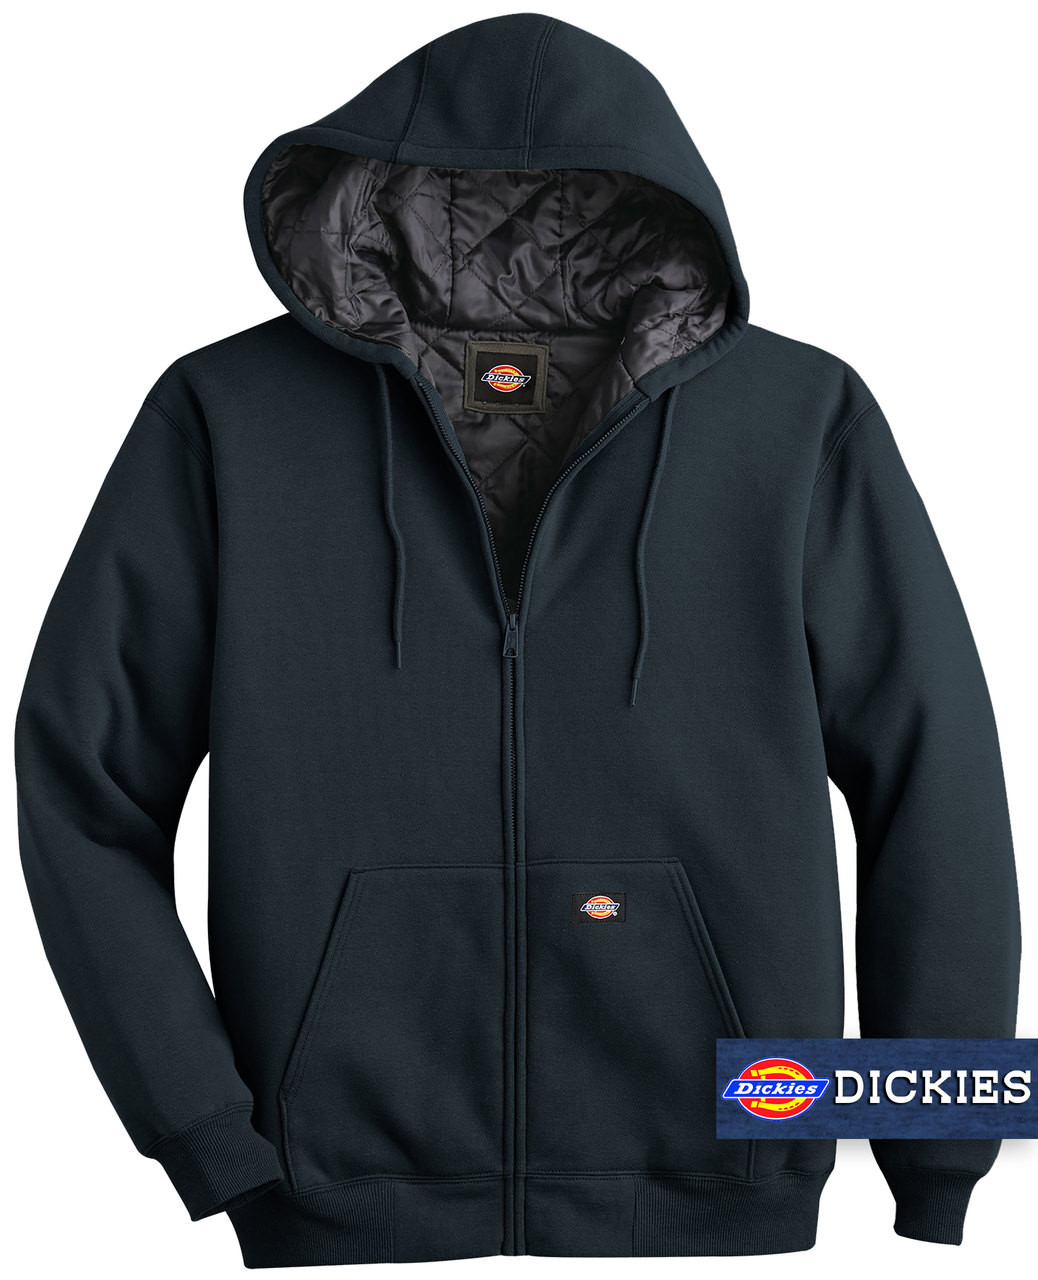 NAVY Heavy Fleece Zip Hoodie Jacket with Quilted Lining.